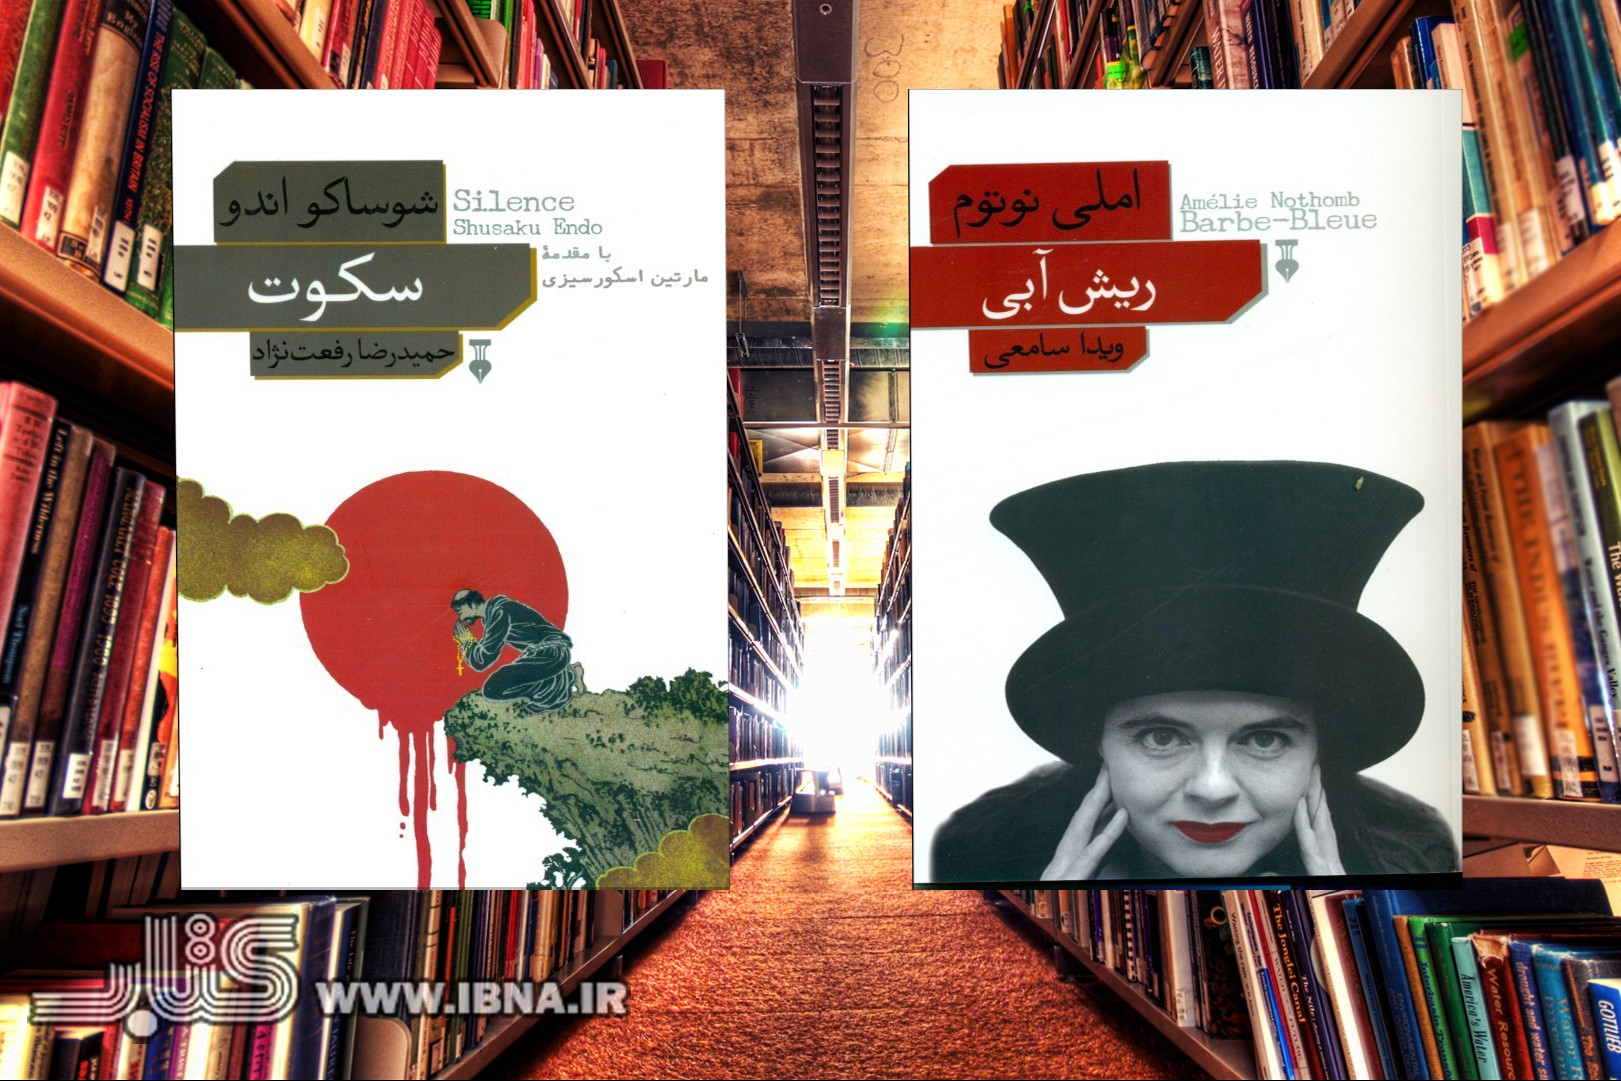 رمانی جنایی از املی نوتوم به فارسی منتشر شد